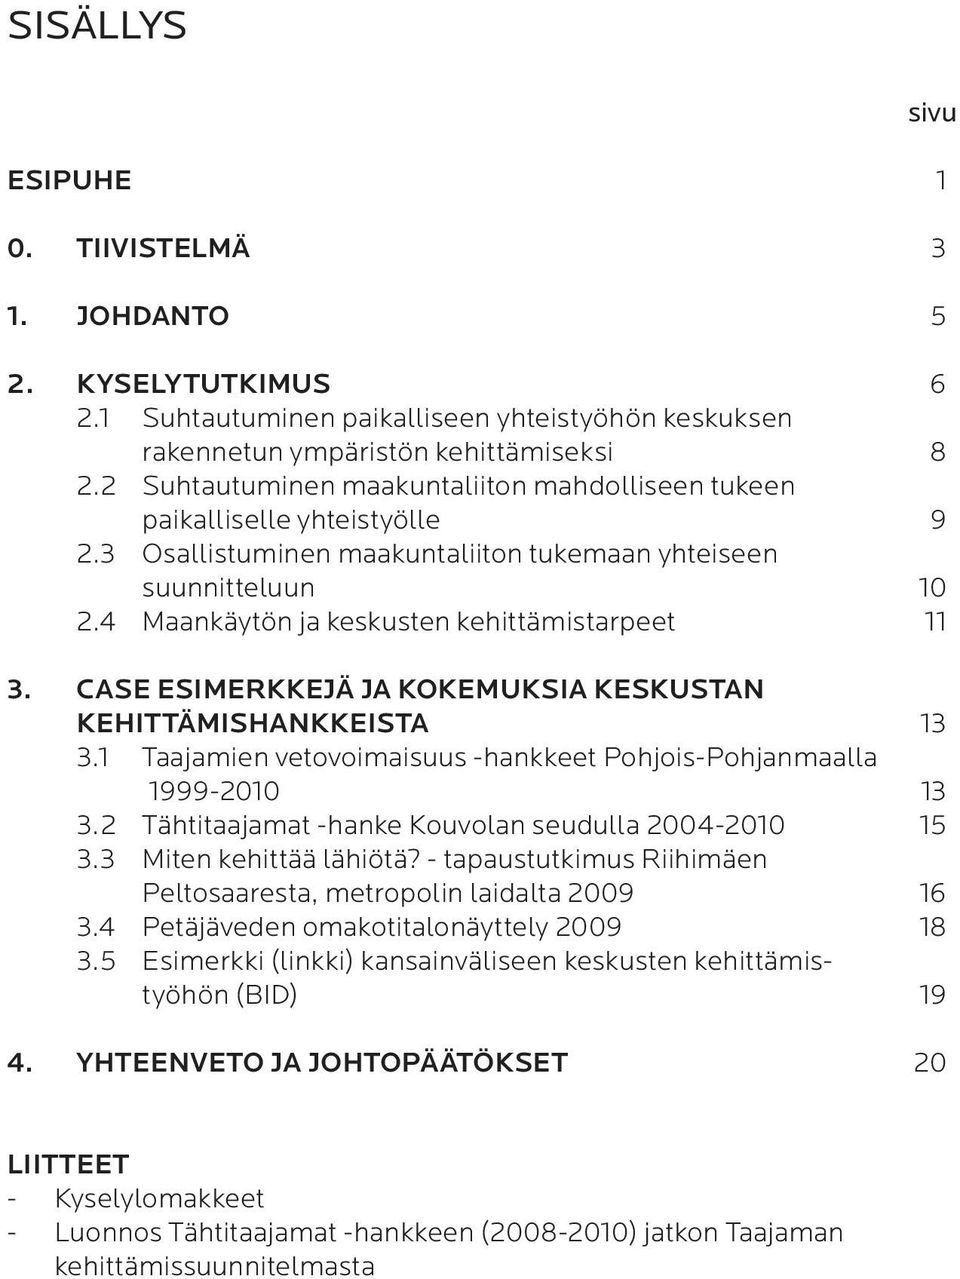 4 Maankäytön ja keskusten kehittämistarpeet 11 3. CASE ESIMERKKEJÄ JA KOKEMUKSIA KESKUSTAN KEHITTÄMISHANKKEISTA 13 3.1 Taajamien vetovoimaisuus -hankkeet Pohjois-Pohjanmaalla 1999-2010 13 3.